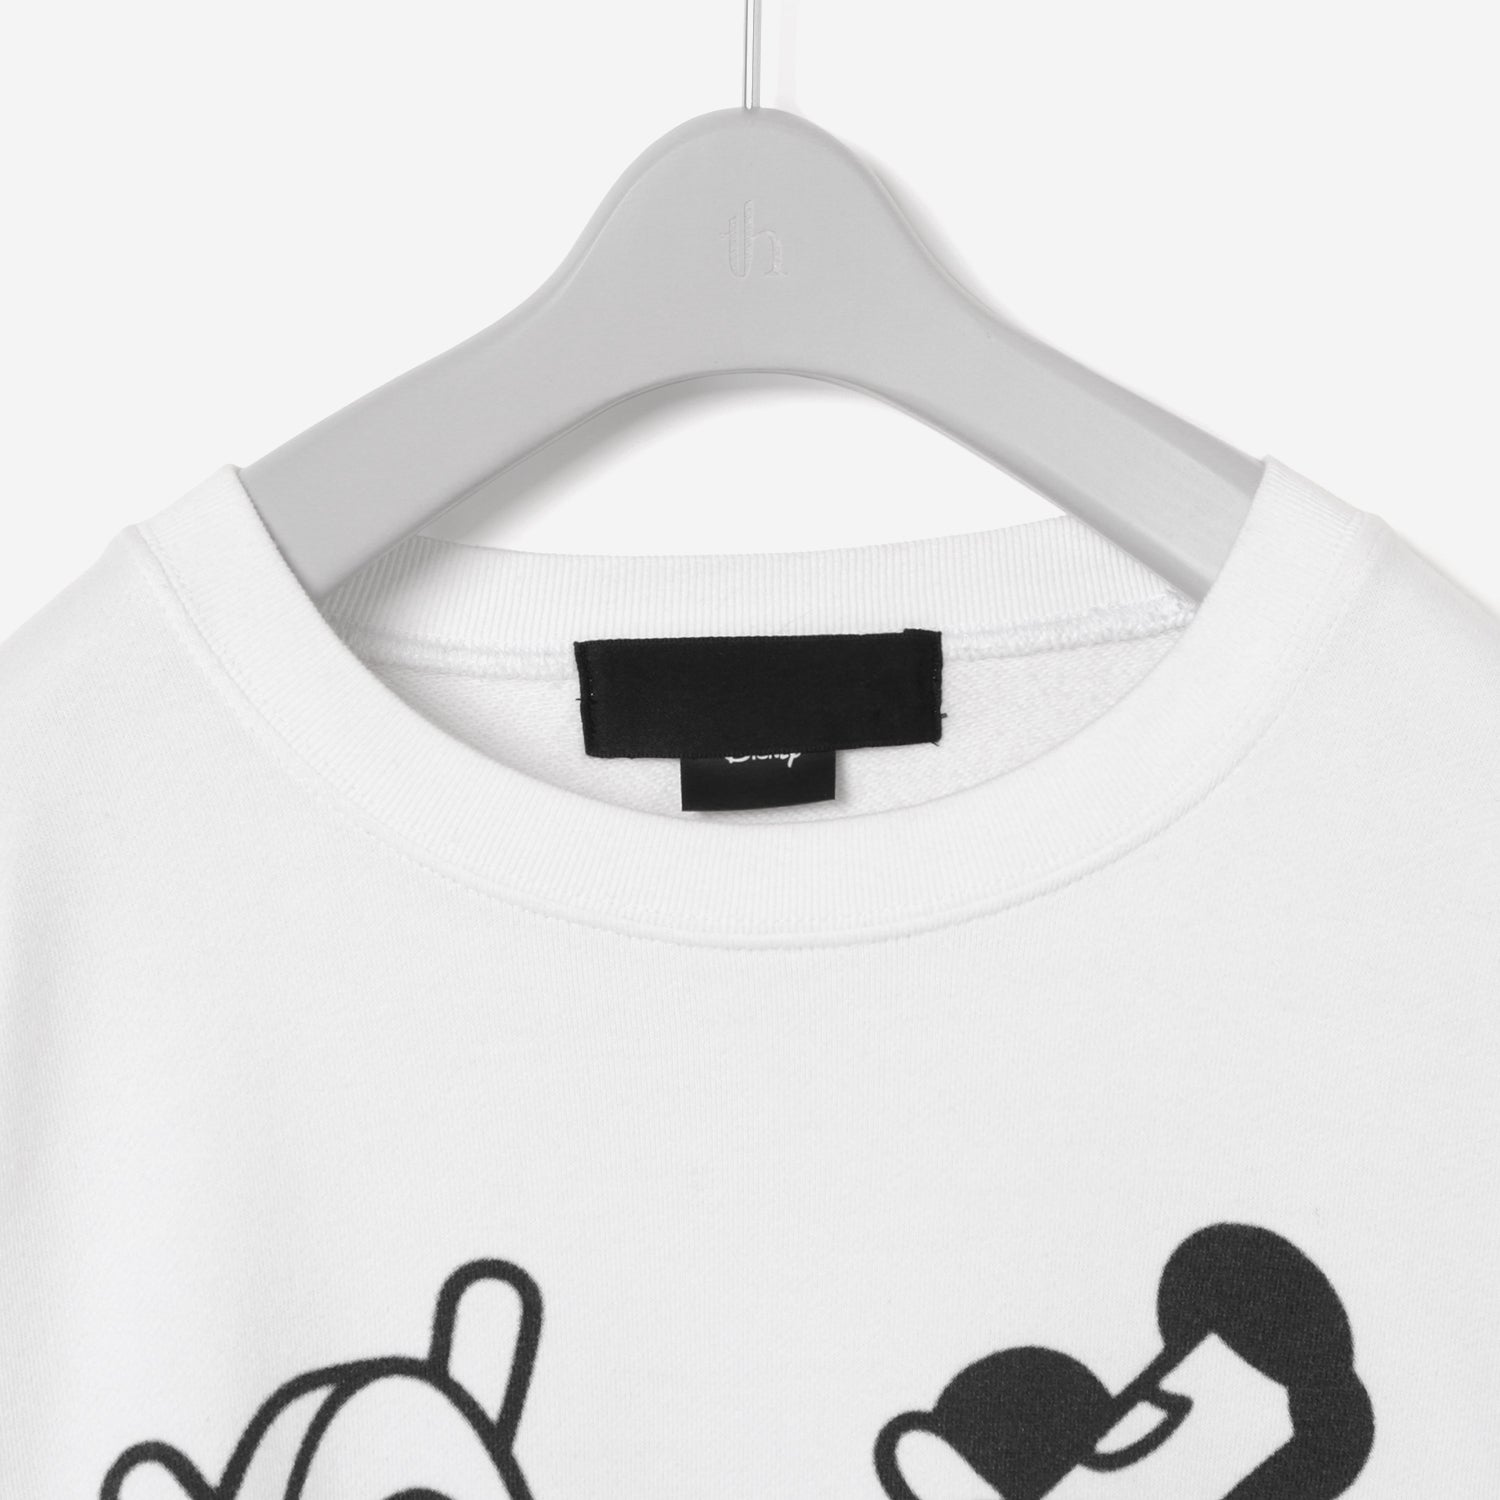 Printed Sweat Shirt / white